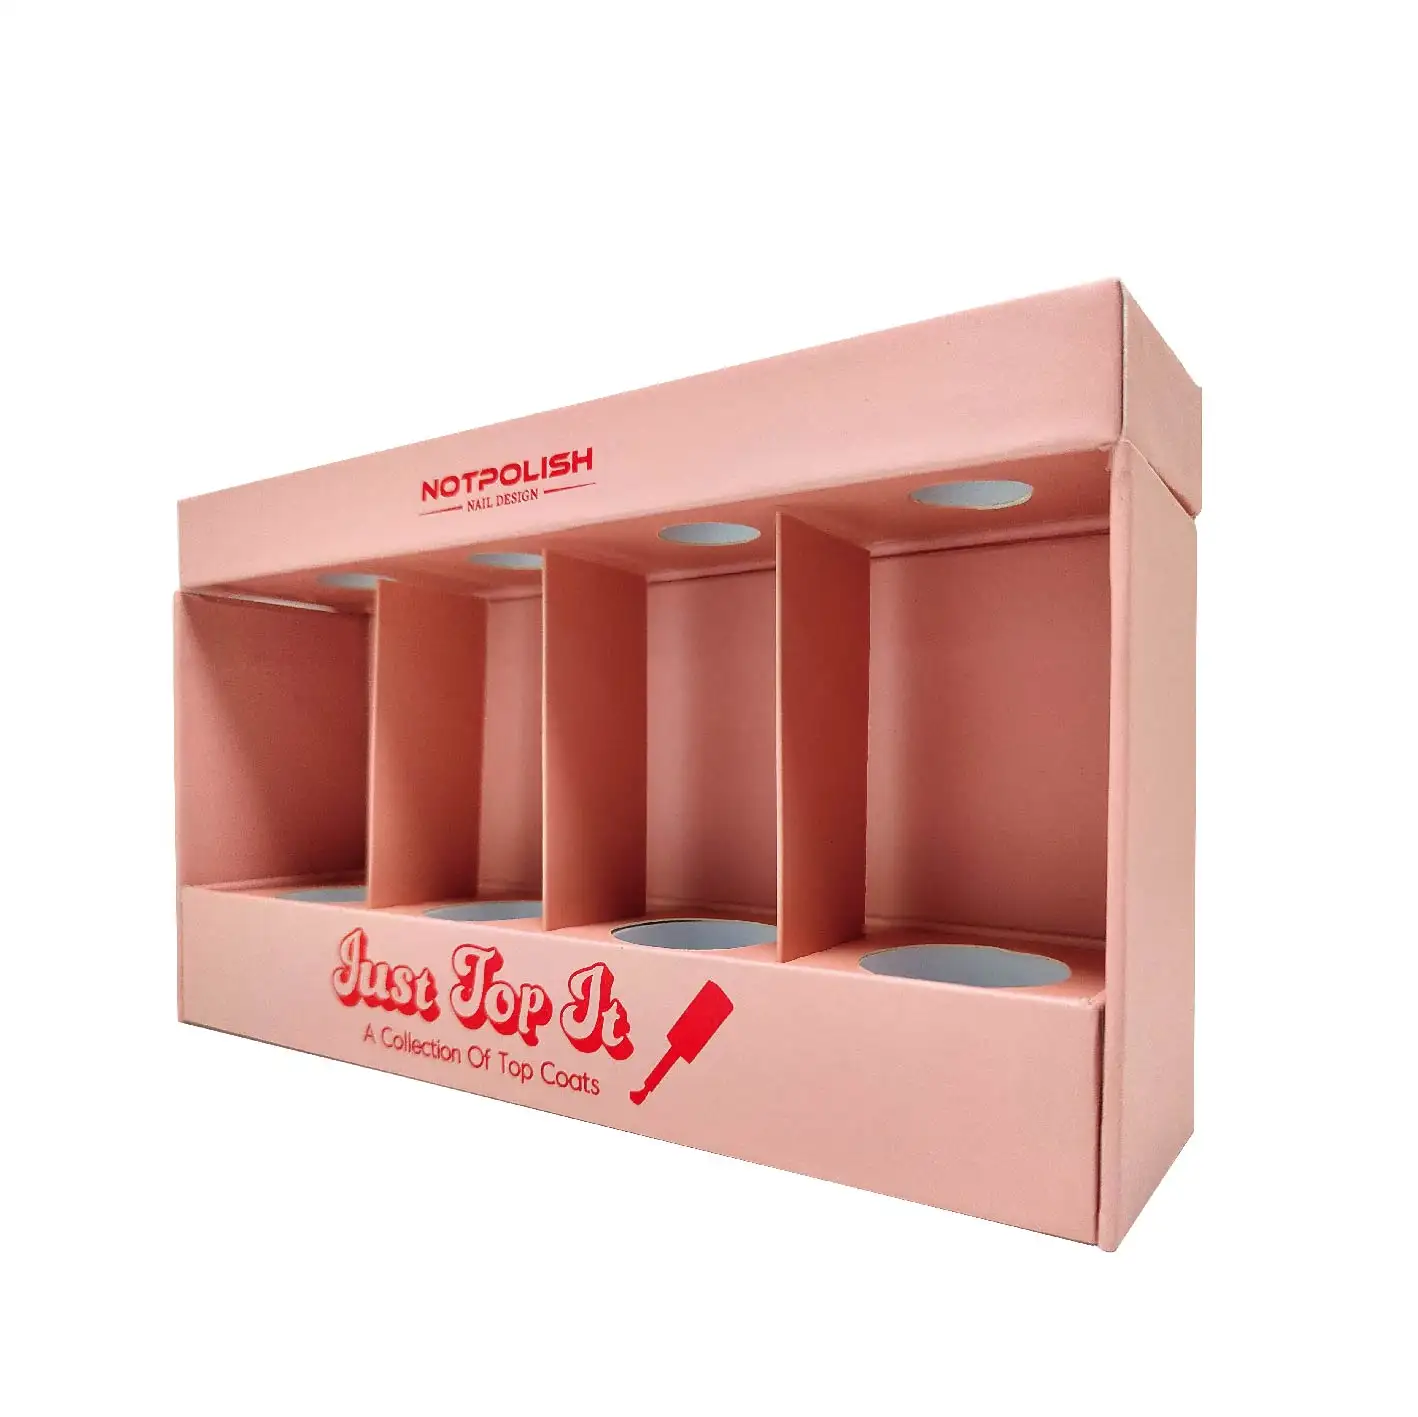 Тисненая печать, эксклюзивная оригинальная розовая косметика для ногтей, креативная картонная коробка для упаковки товаров